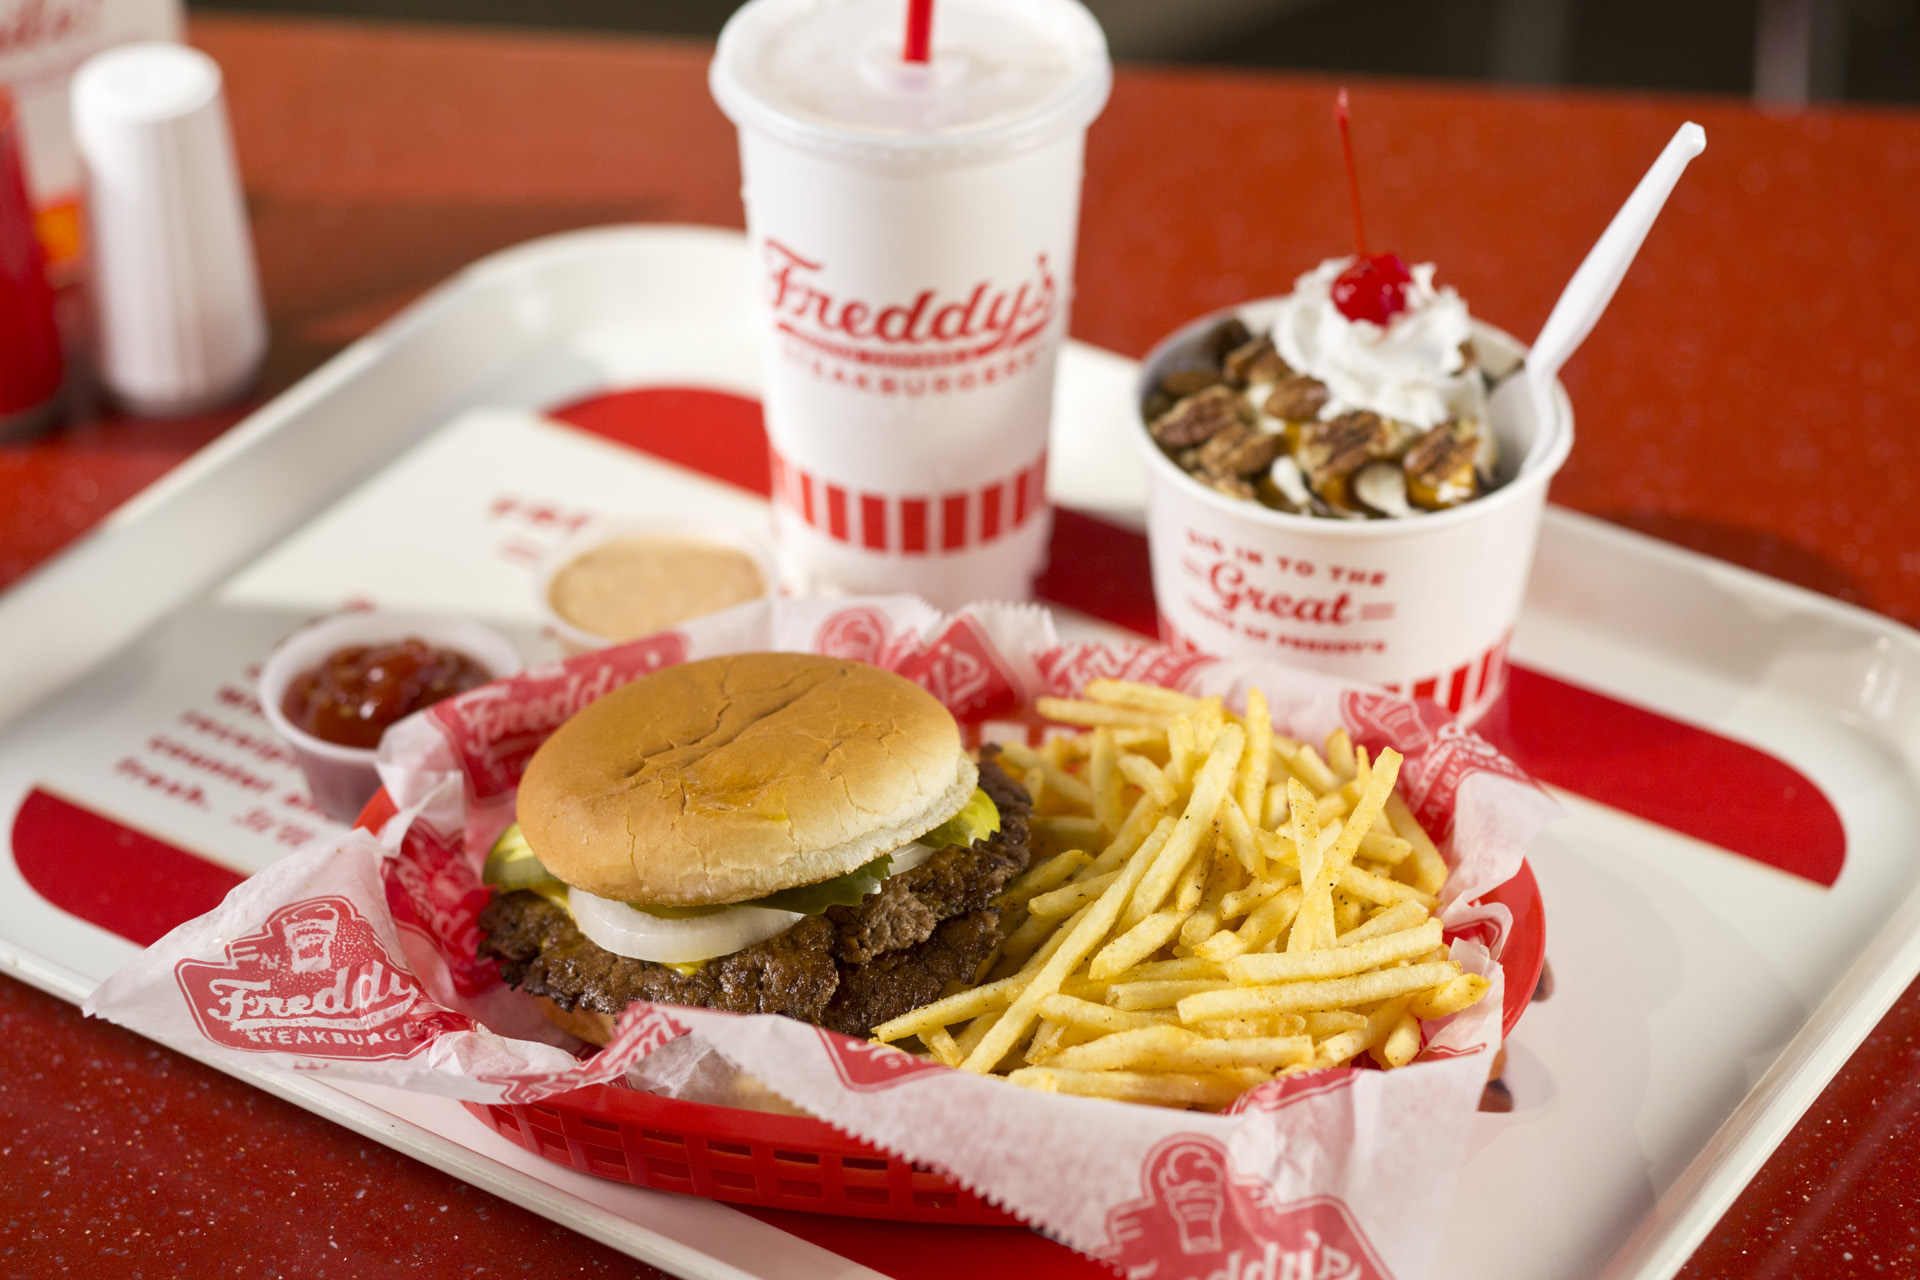 Freddy's Frozen Custard & Steakburgers - Wikipedia